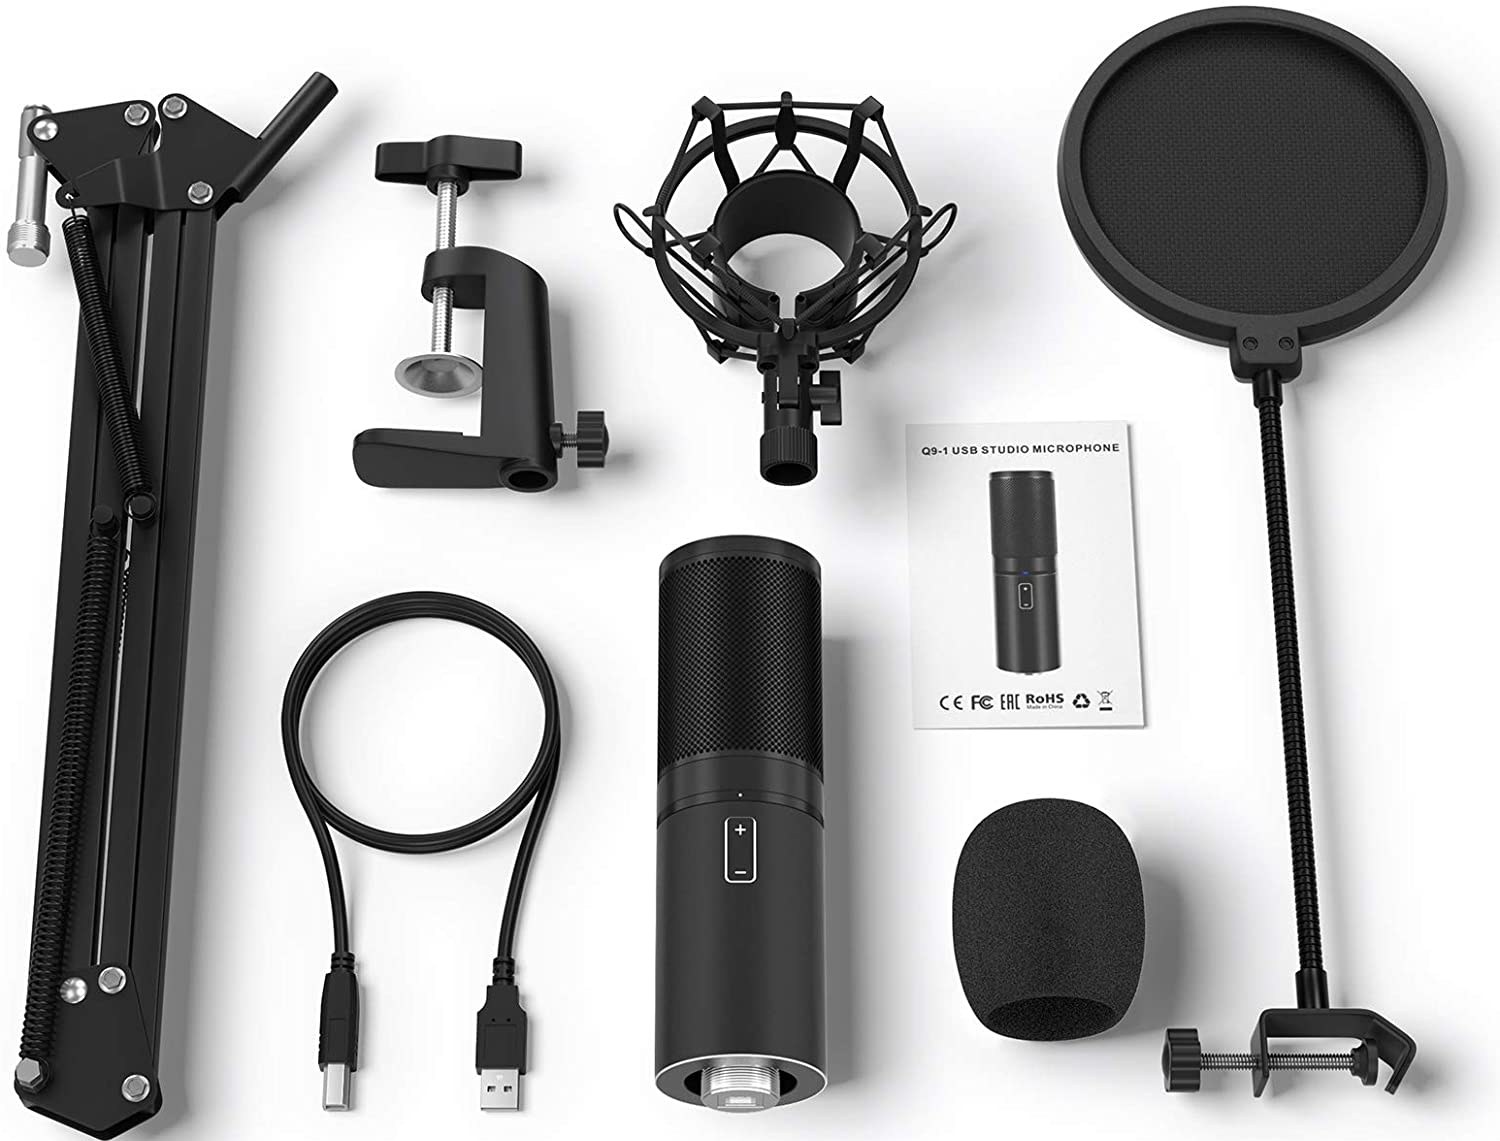 Tonor USB Microphone Kit Q9